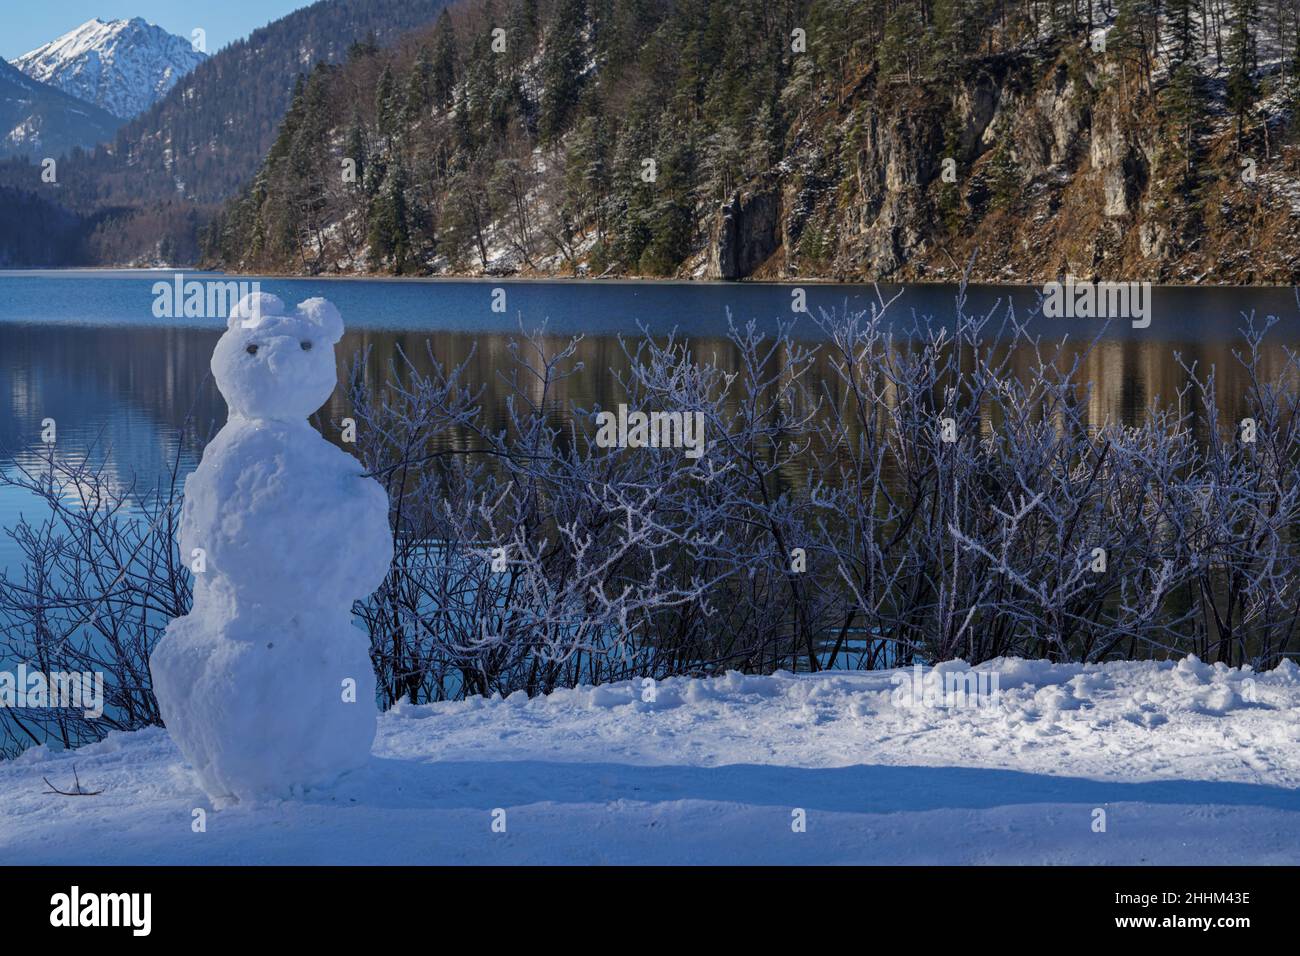 Kinder haben am Ufer des Alpsee in Schwangau, Bayern, einen Schneemann gebaut. Stockfoto